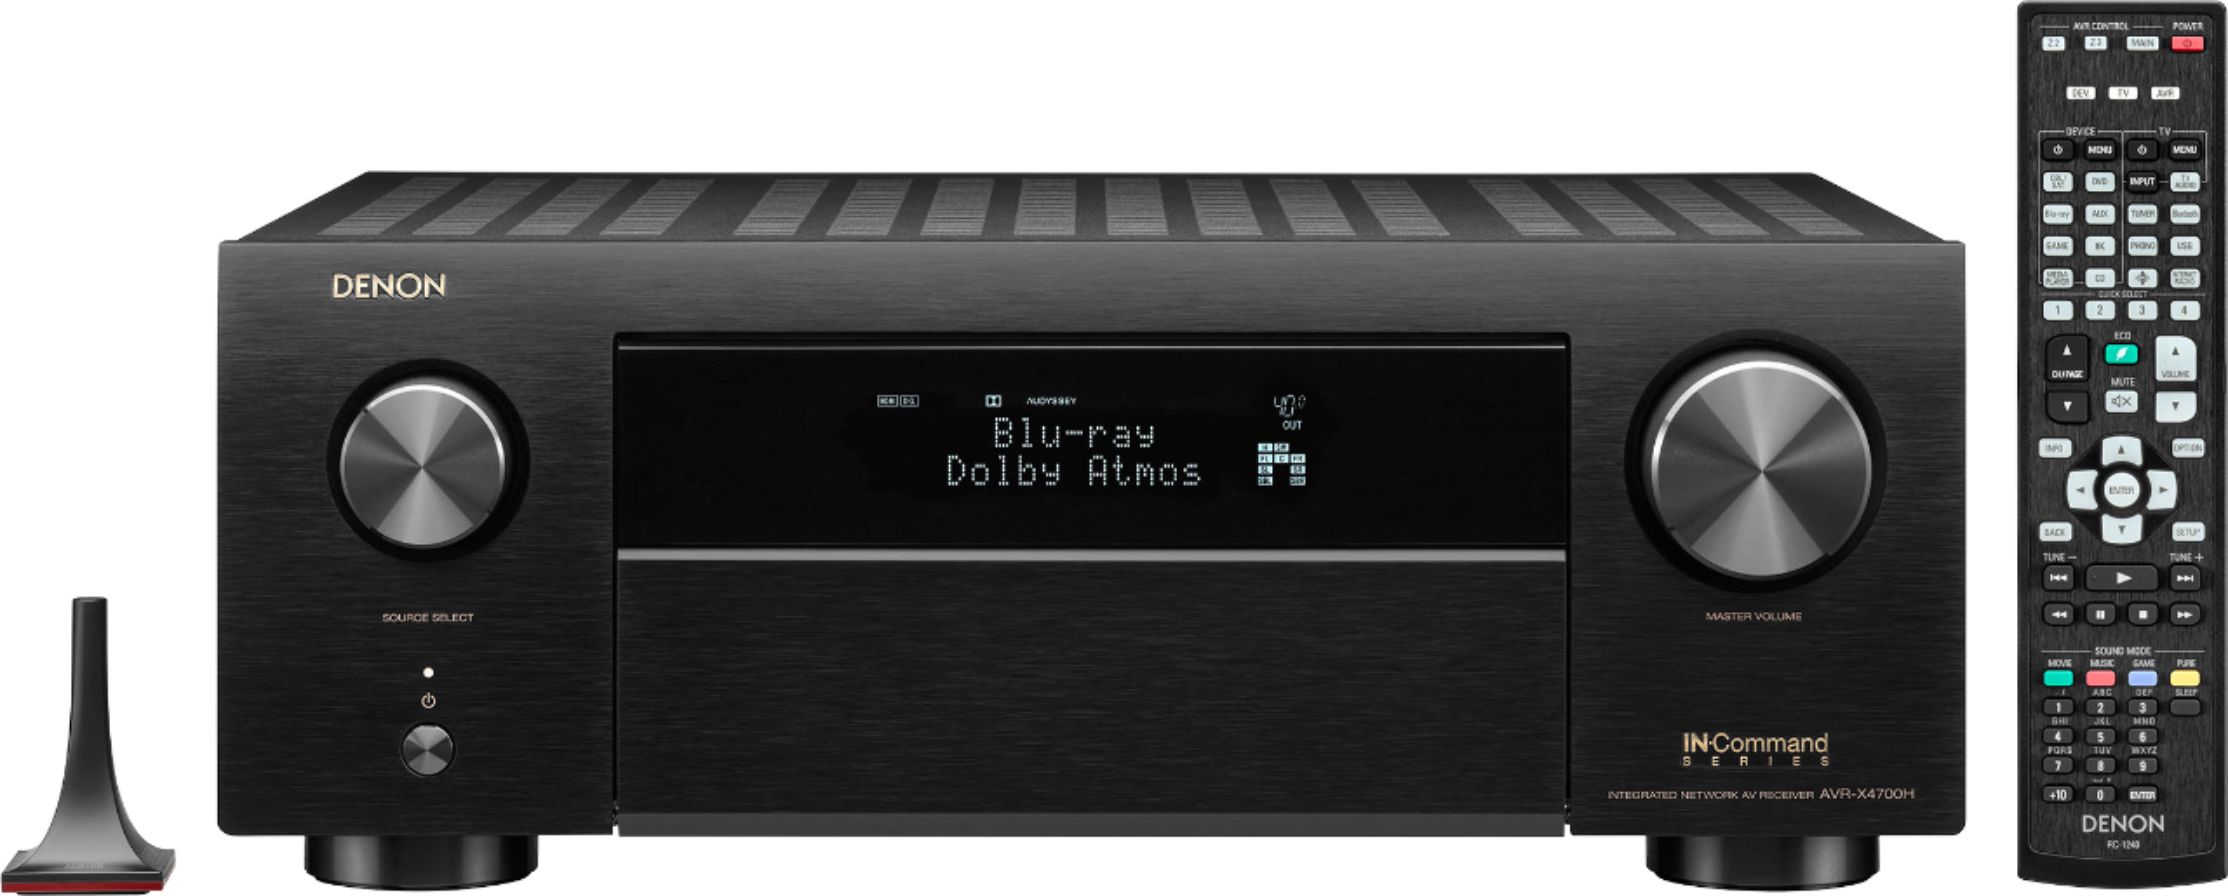 Denon - AVR-X4700H 8K Ultra HD 9.2 Channel (125 Watt X 9) AV Receiver 2020 Model - 3D Audio & Video, Built for Gaming - Black